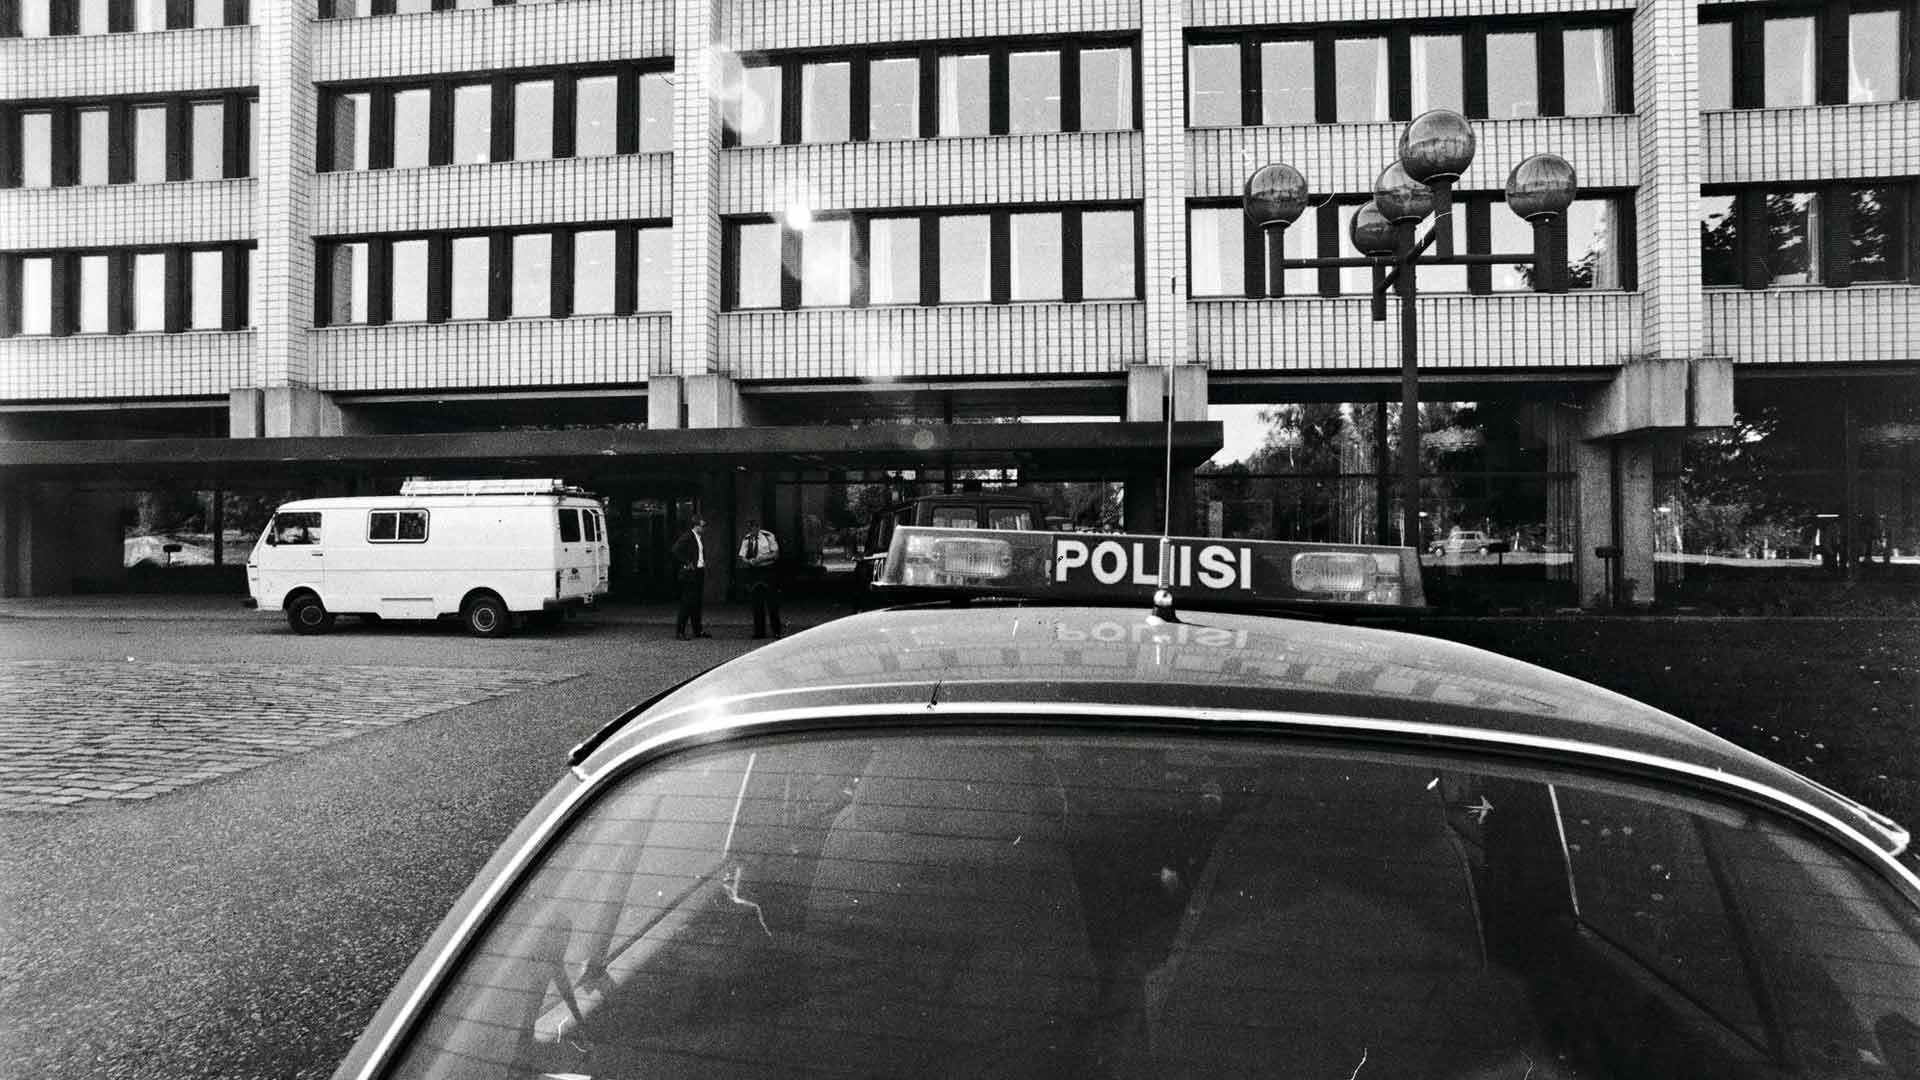 Yleisradion hallintorakennus sijaitsi 80-luvulla vielä Töölön Kesäkatu 2:ssa. Kirjepommi räjähti rakennuksen seitsemännessä kerroksessa pääjohtajan toimiston viereisessä huoneessa.